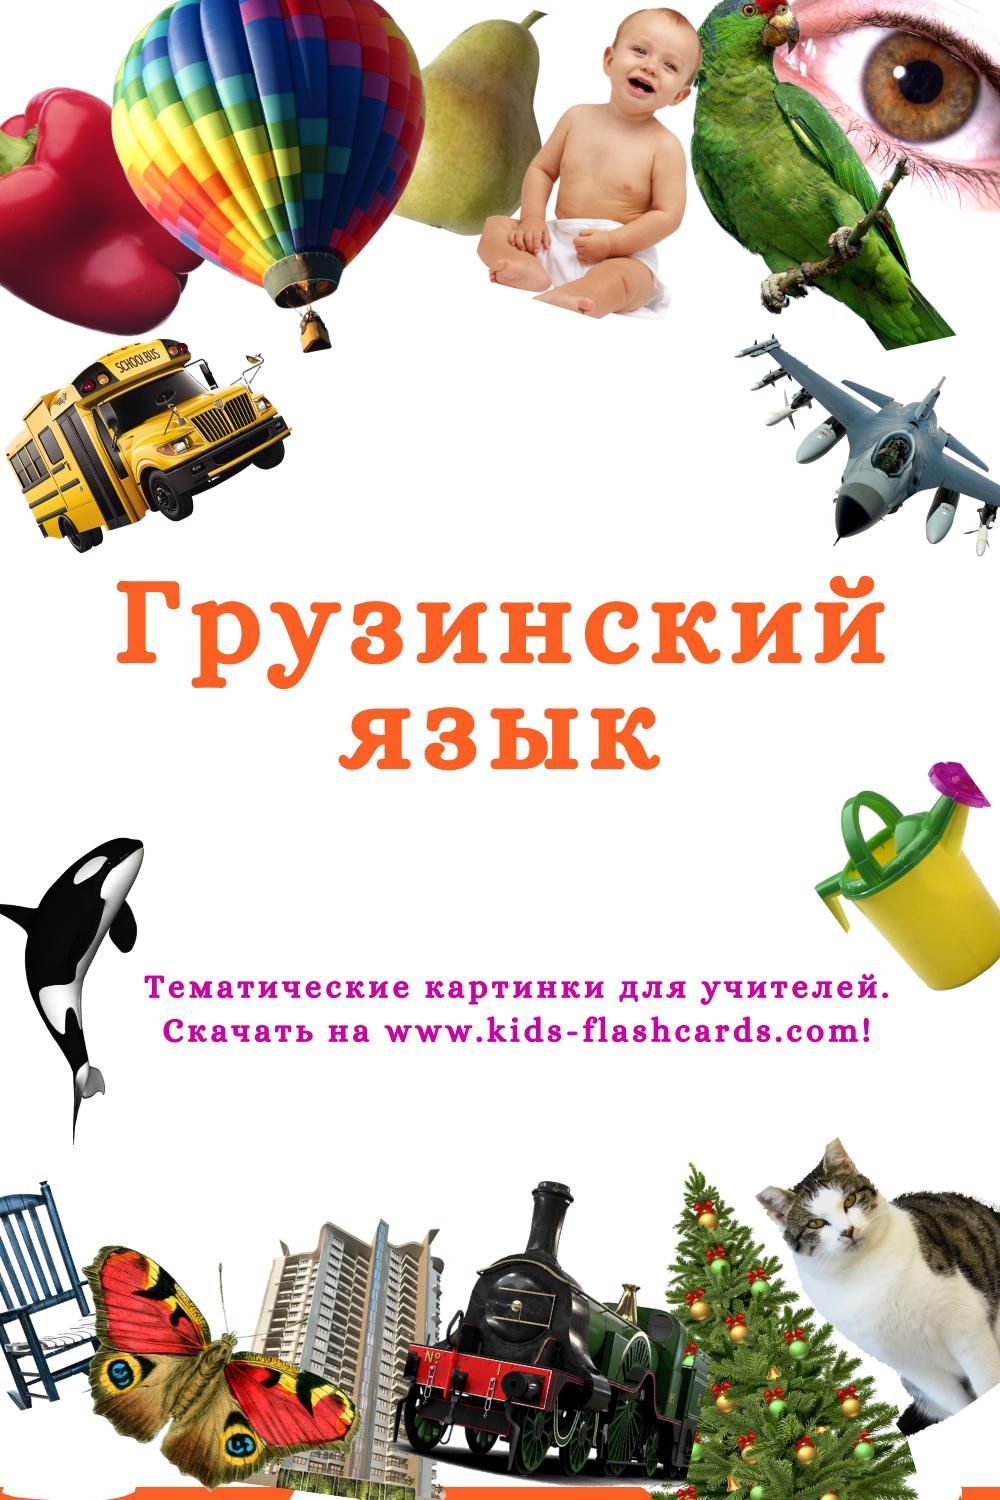 Грузинский язык - распечатки для детей